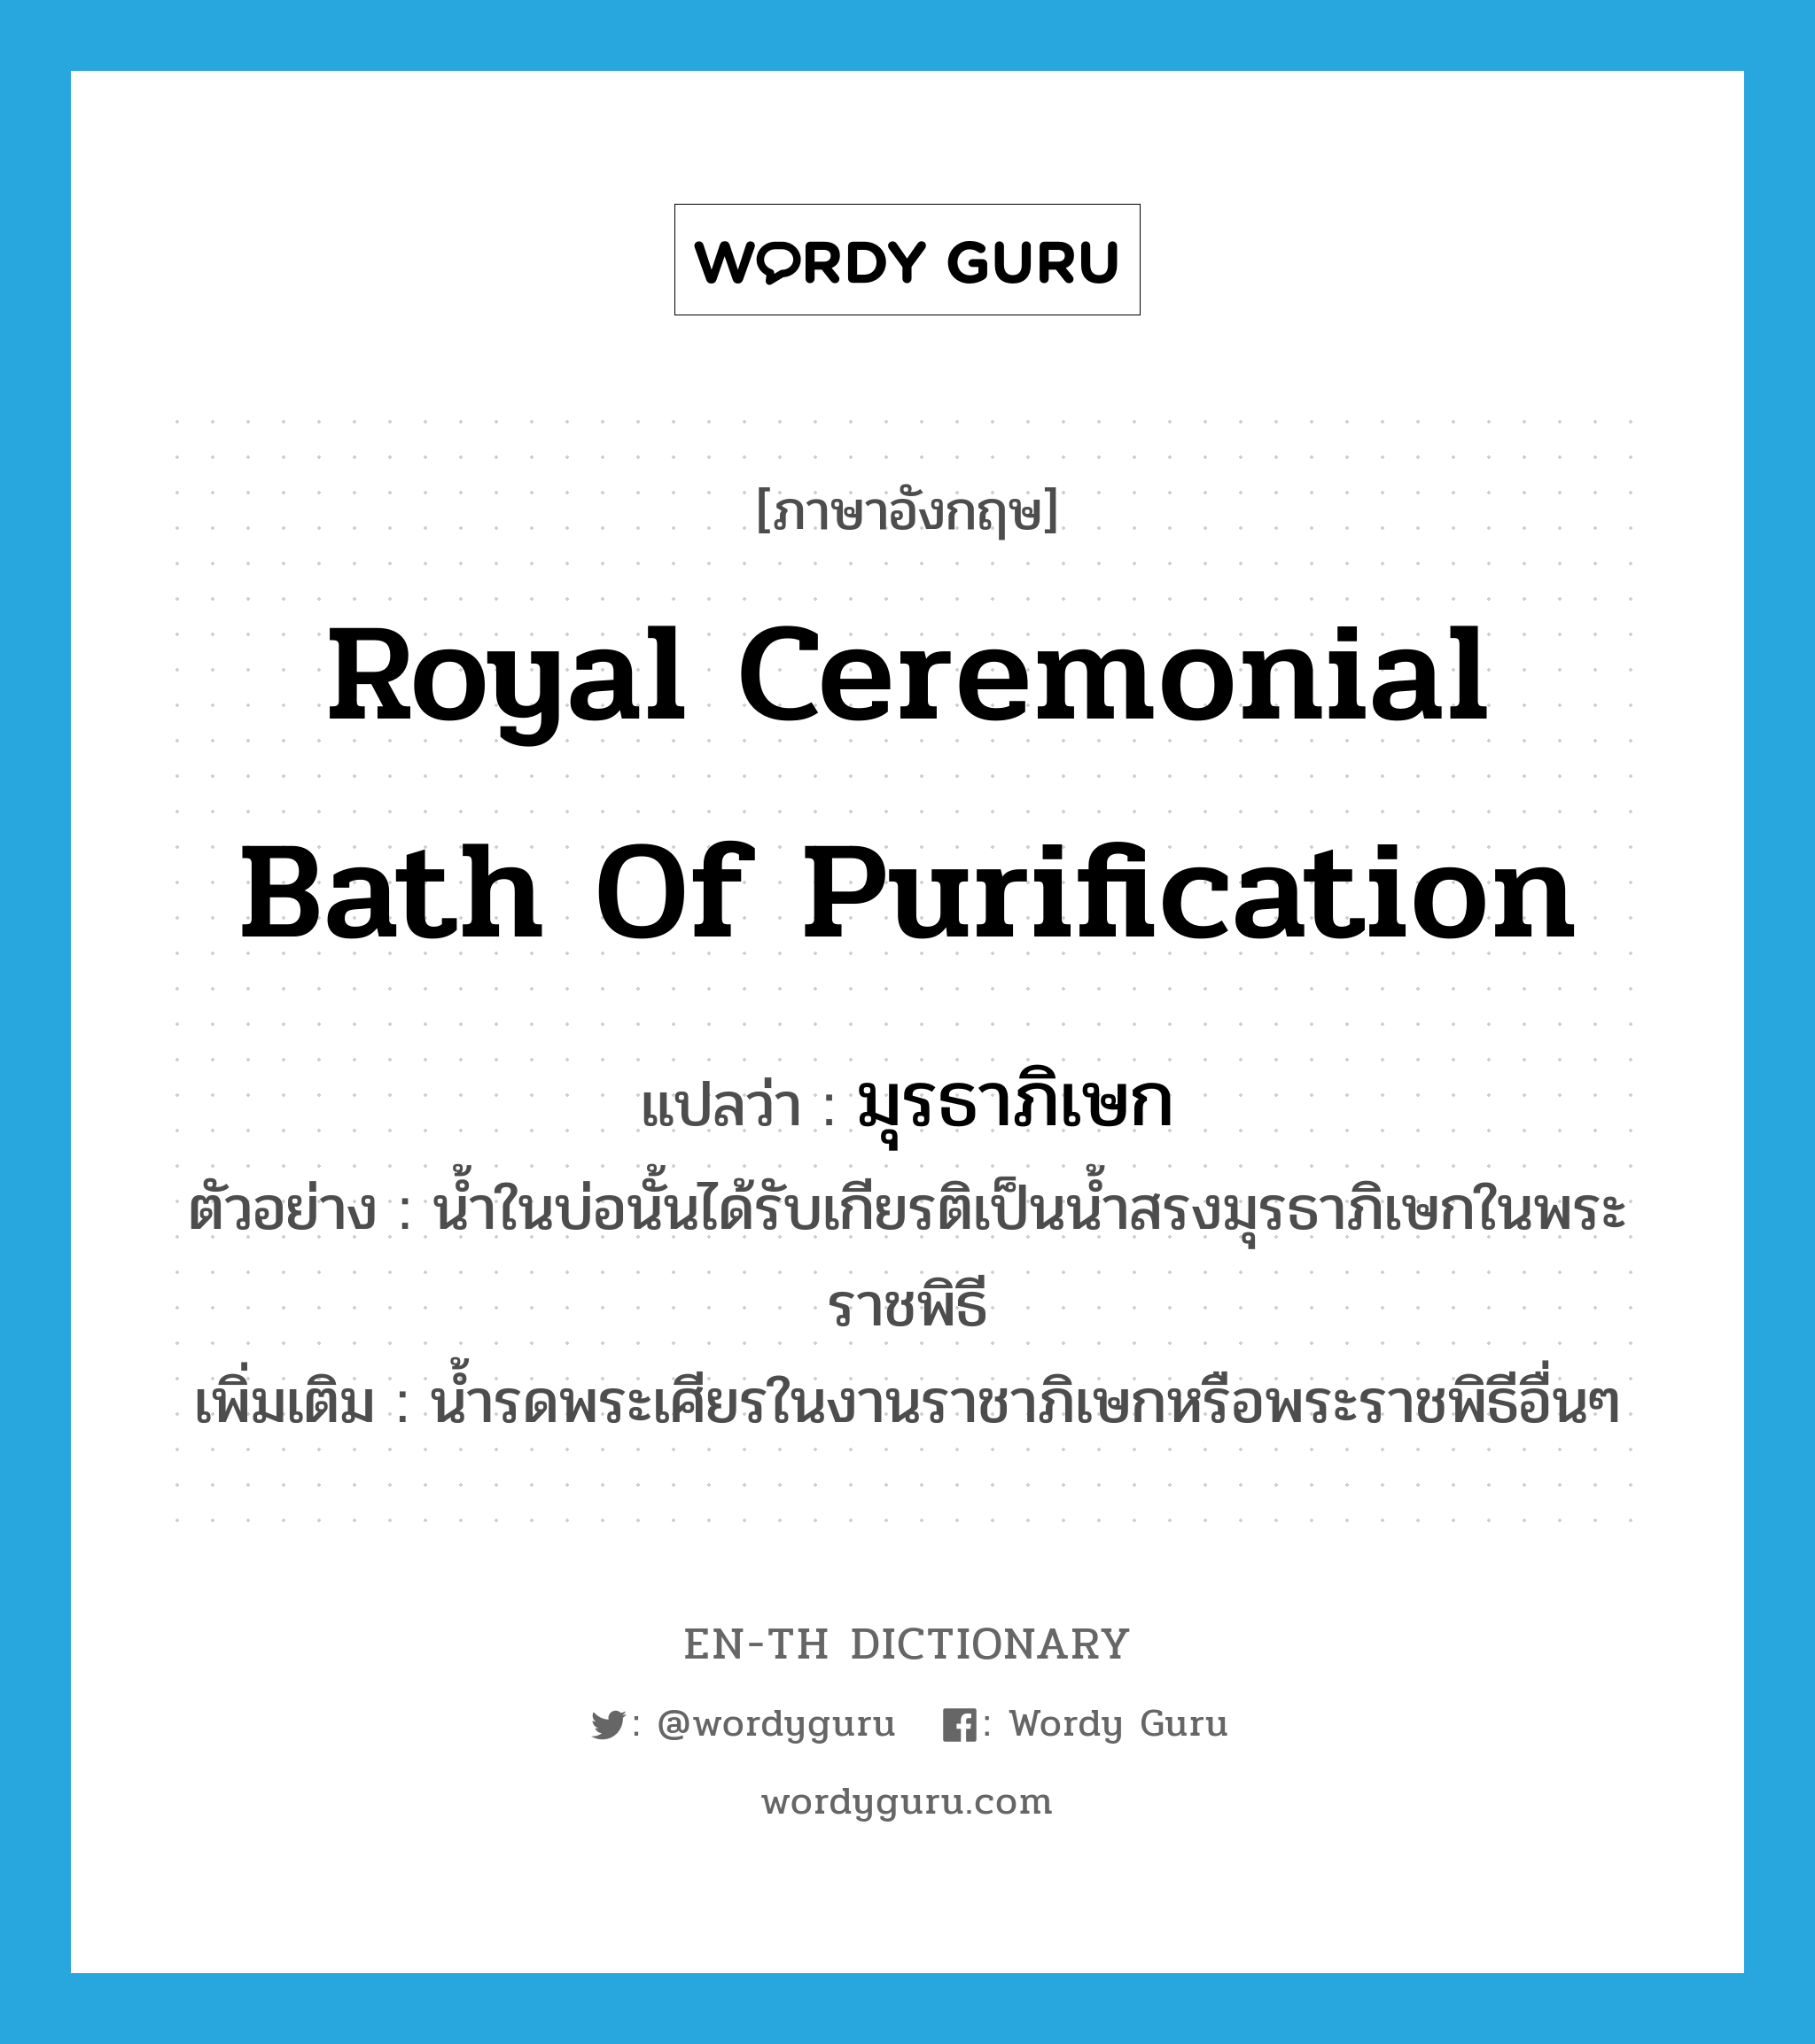 มุรธาภิเษก ภาษาอังกฤษ?, คำศัพท์ภาษาอังกฤษ มุรธาภิเษก แปลว่า Royal ceremonial bath of purification ประเภท N ตัวอย่าง น้ำในบ่อนั้นได้รับเกียรติเป็นน้ำสรงมุรธาภิเษกในพระราชพิธี เพิ่มเติม น้ำรดพระเศียรในงานราชาภิเษกหรือพระราชพิธีอื่นๆ หมวด N